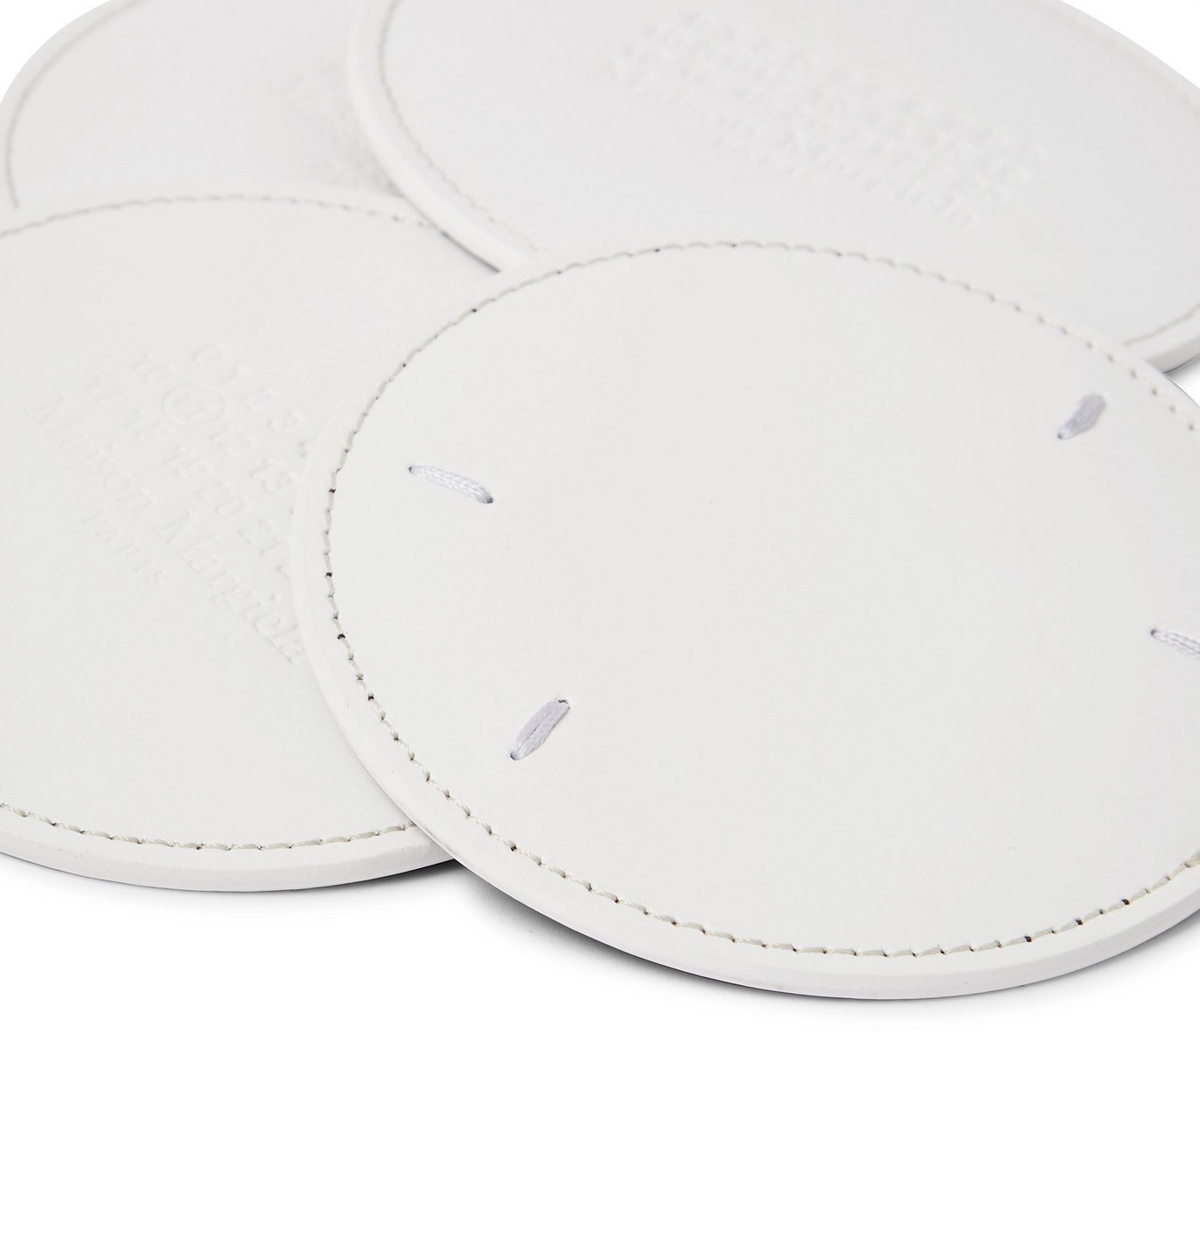 MAISON MARGIELA - Set of Six Leather Coasters - White